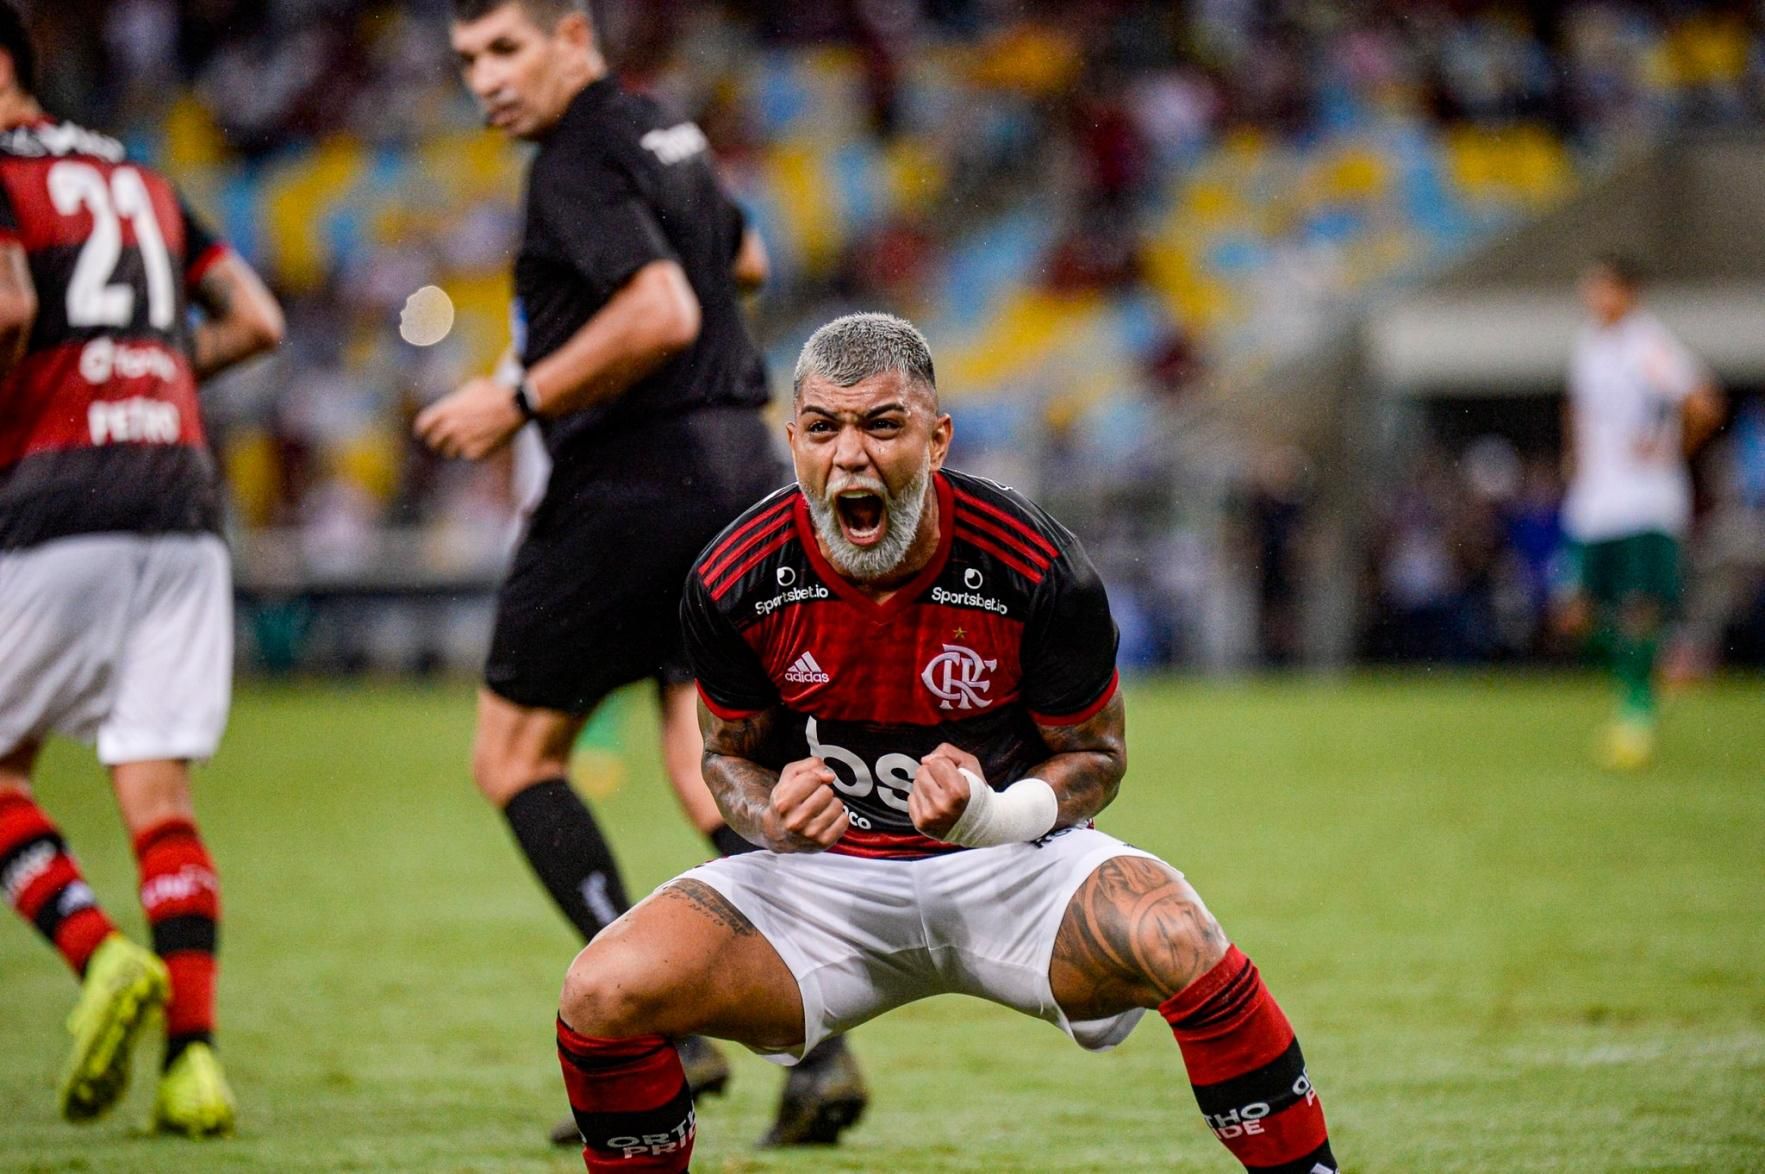 Jovens das categorias de base do Flamengo ganham oportunidade e pedem  passagem na 'Era Paulo Sousa' - Coluna do Fla